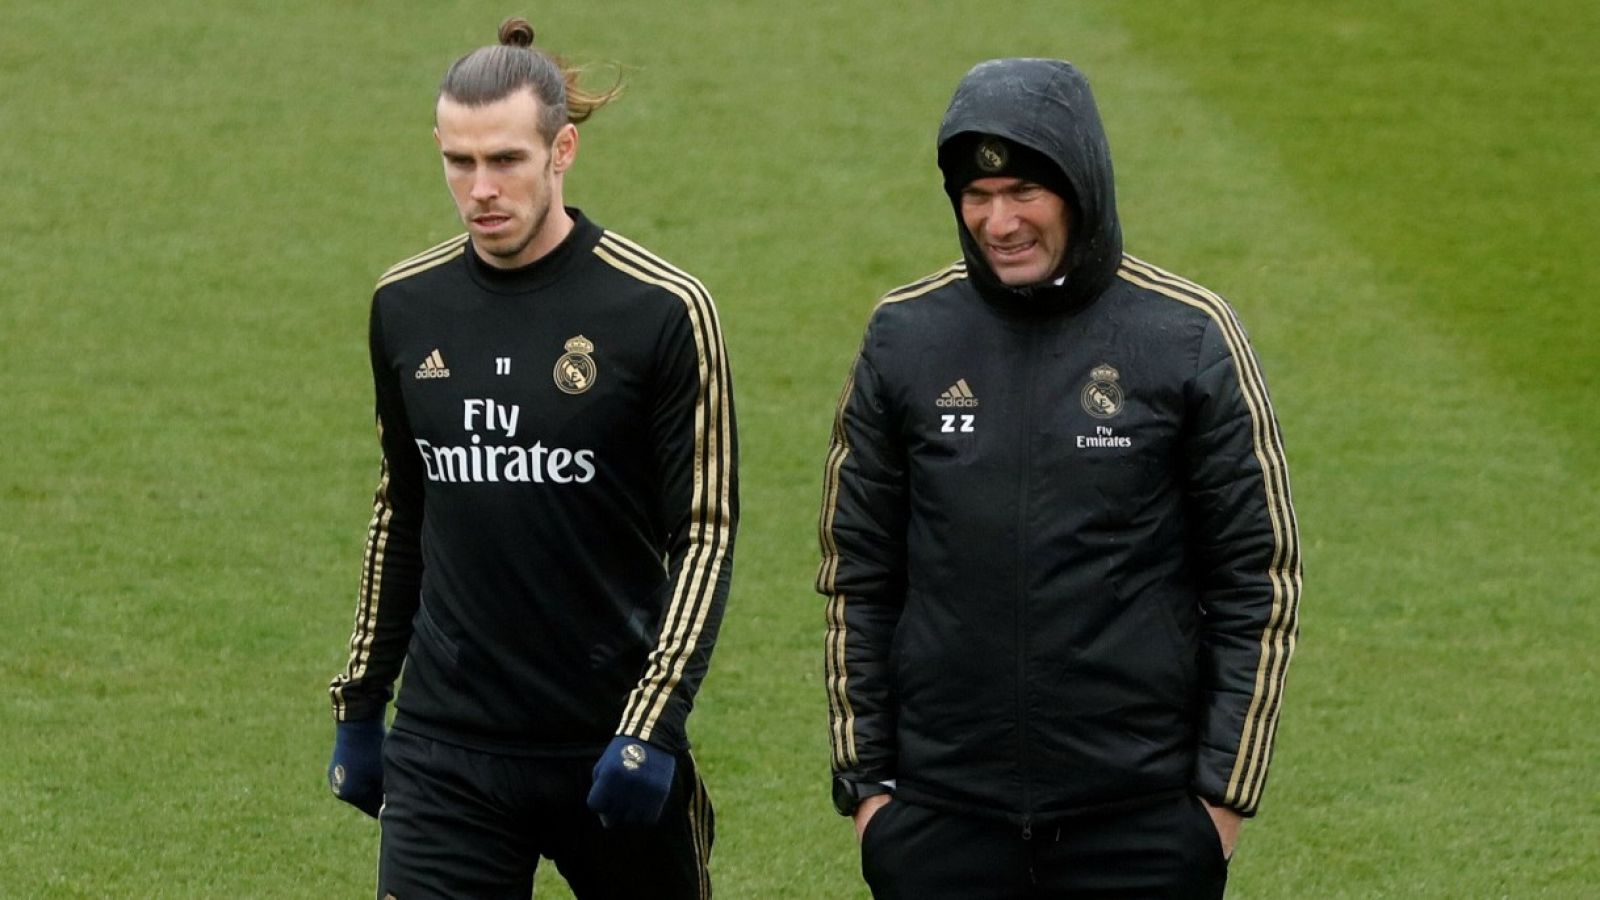 La prensa británica apunta a un enfrentamiento Bale-Zidane ante la ausencia del galés en Manchester